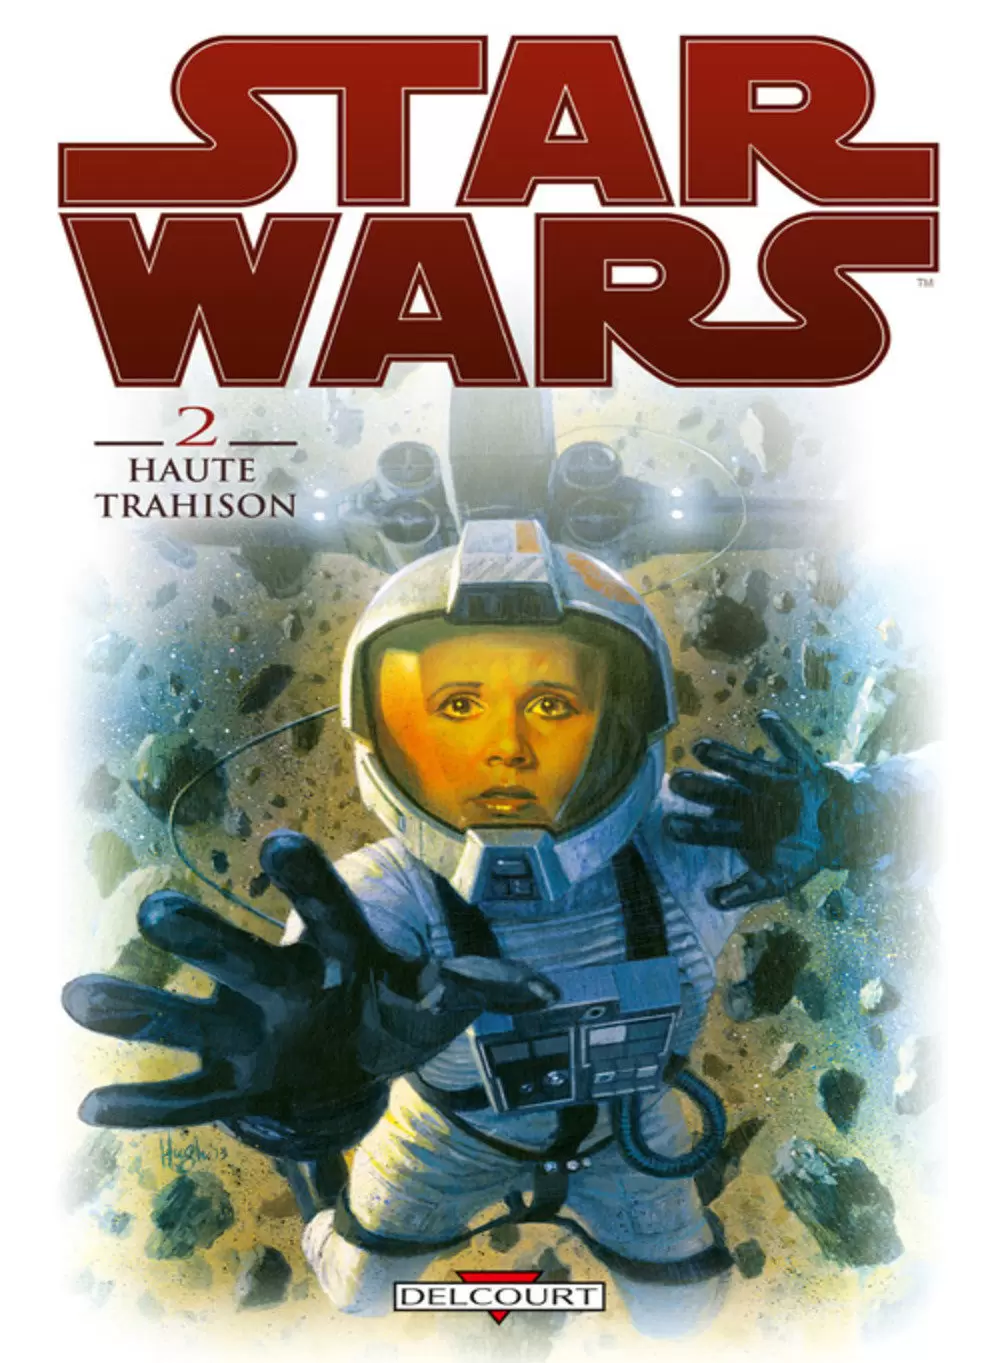 Star Wars - Delcourt - Star Wars tome 2: Haute trahison